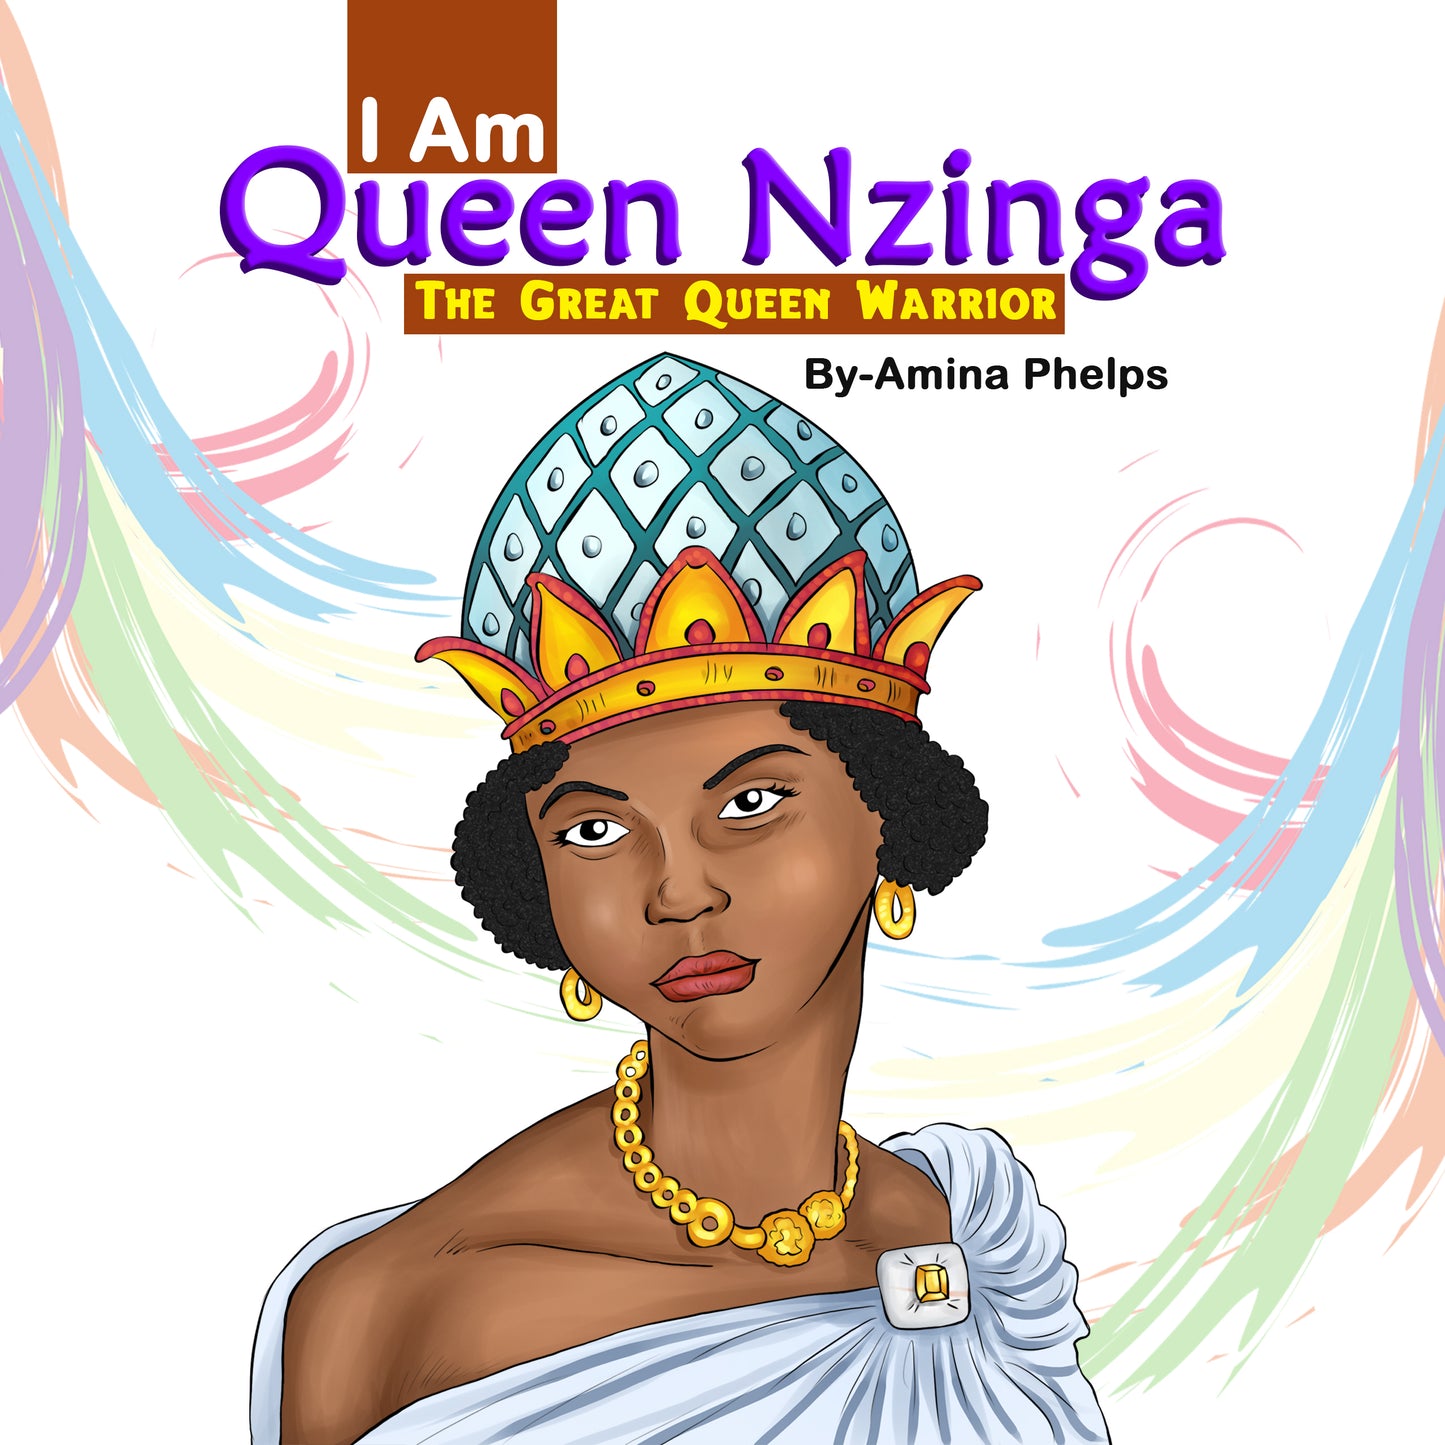 I Am Queen Nzinga: The Great Queen Warrior